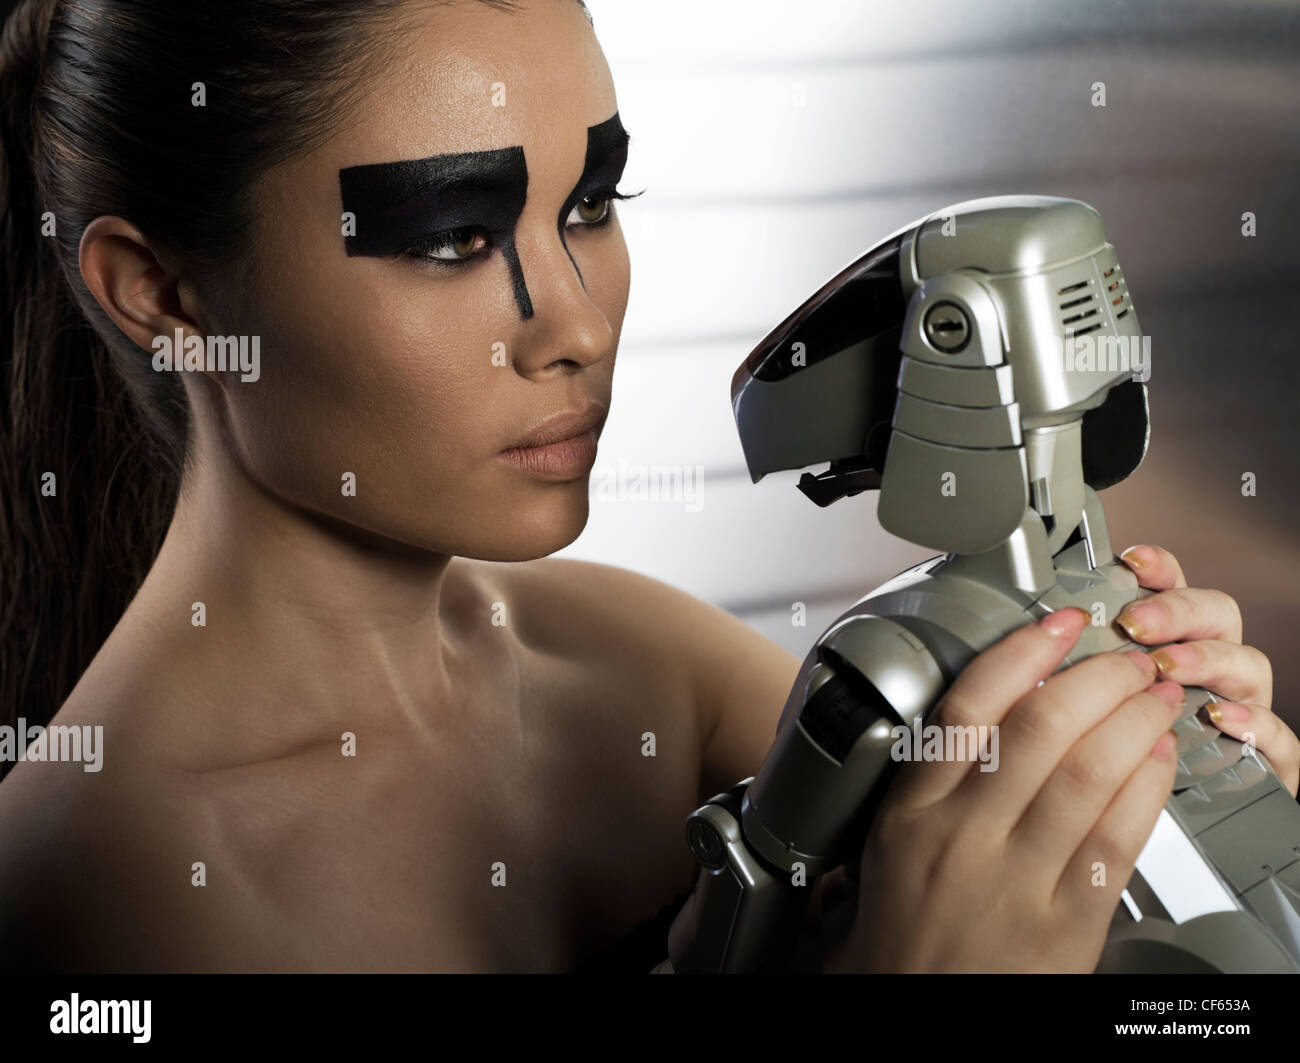 Chien Robot Aibo de Sony avec modèle féminin futuriste Banque D'Images